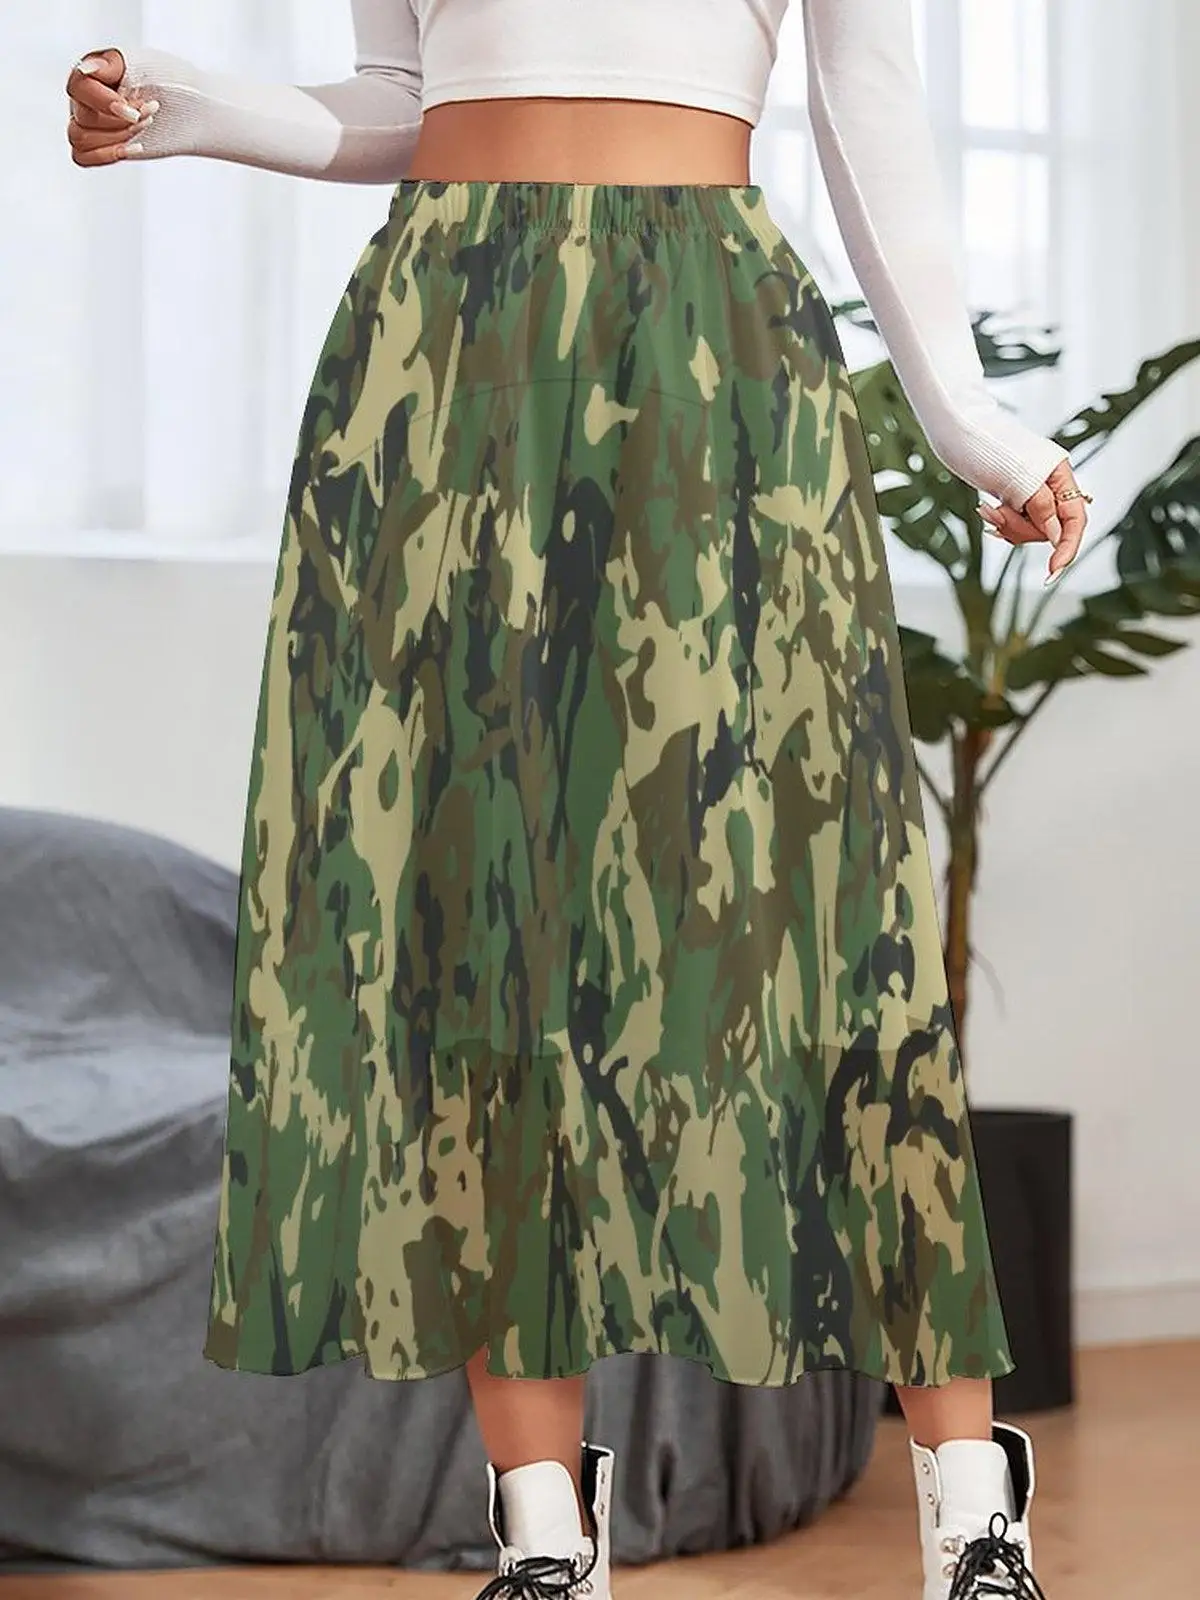 falda militar verde Compra falda militar verde envío gratis en AliExpress version